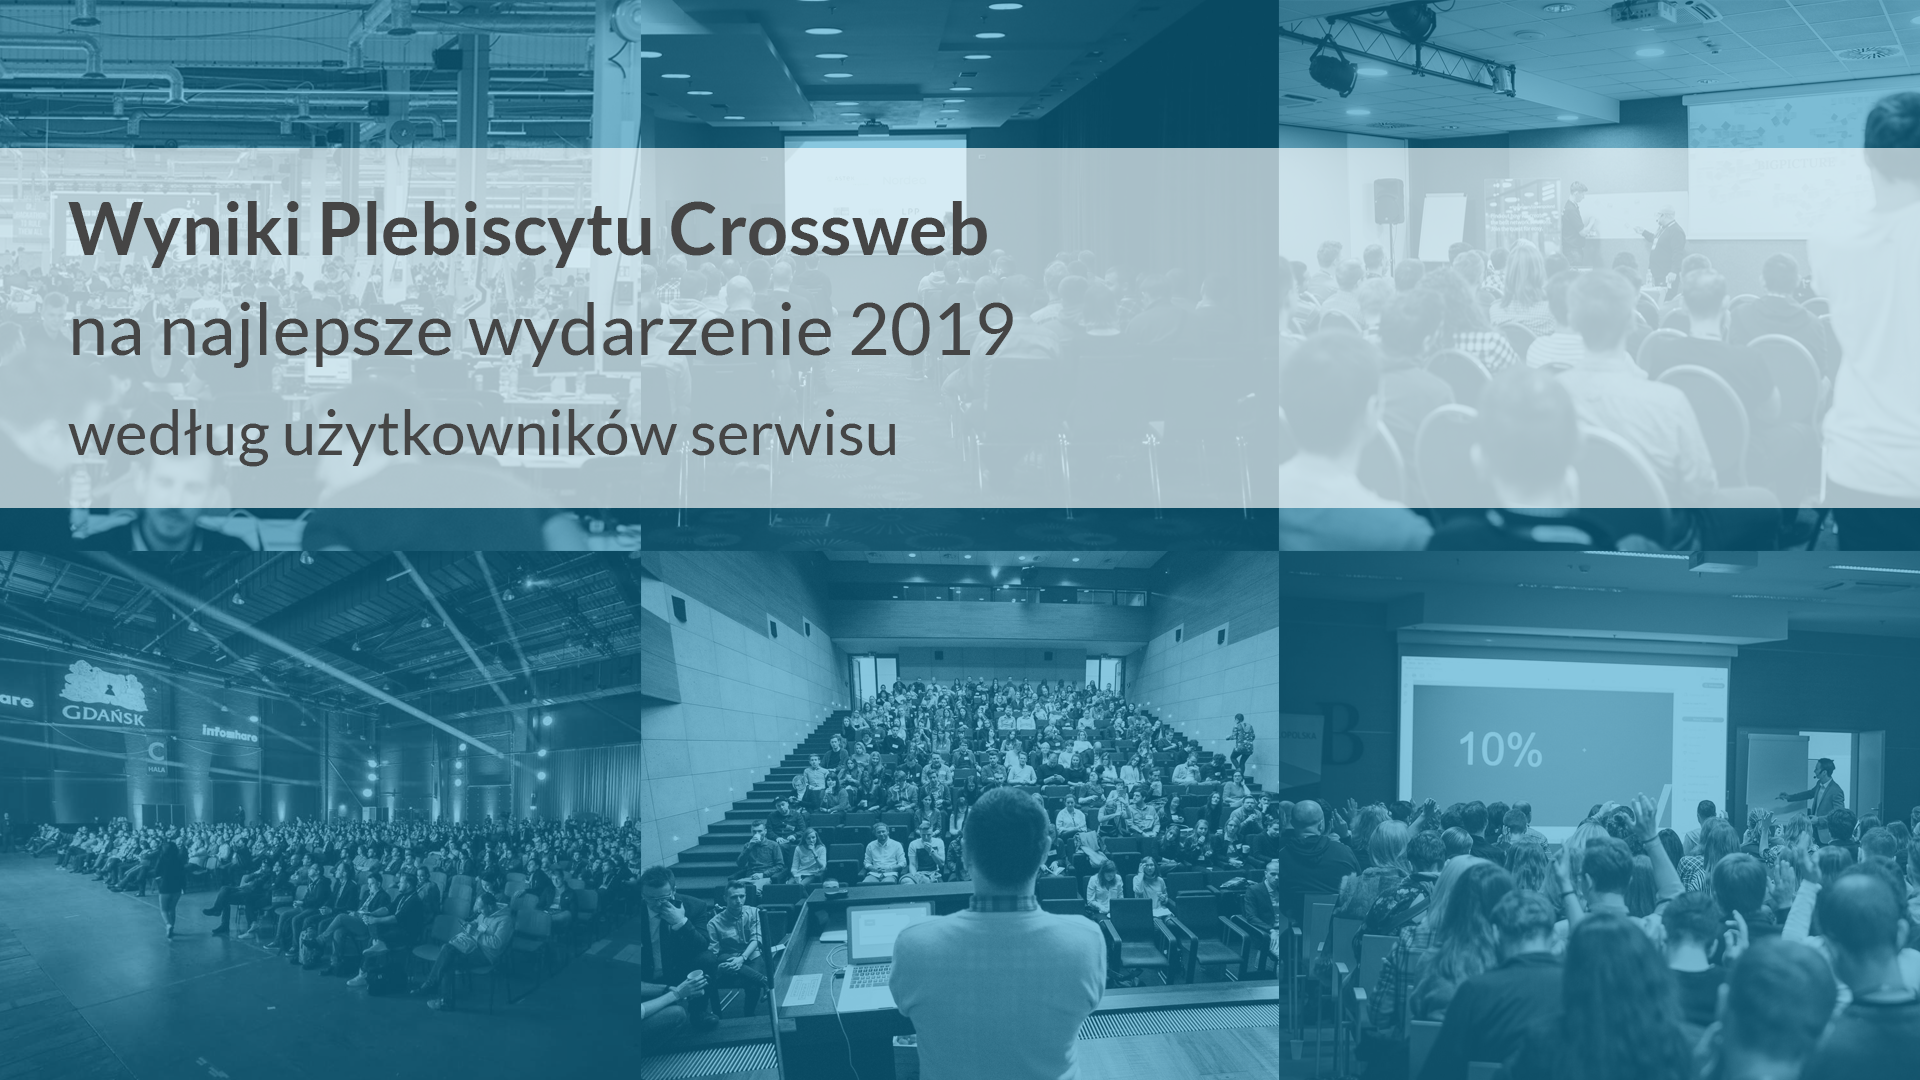 Wyniki Plebiscytu Crossweb na najlepsze wydarzenie 2019